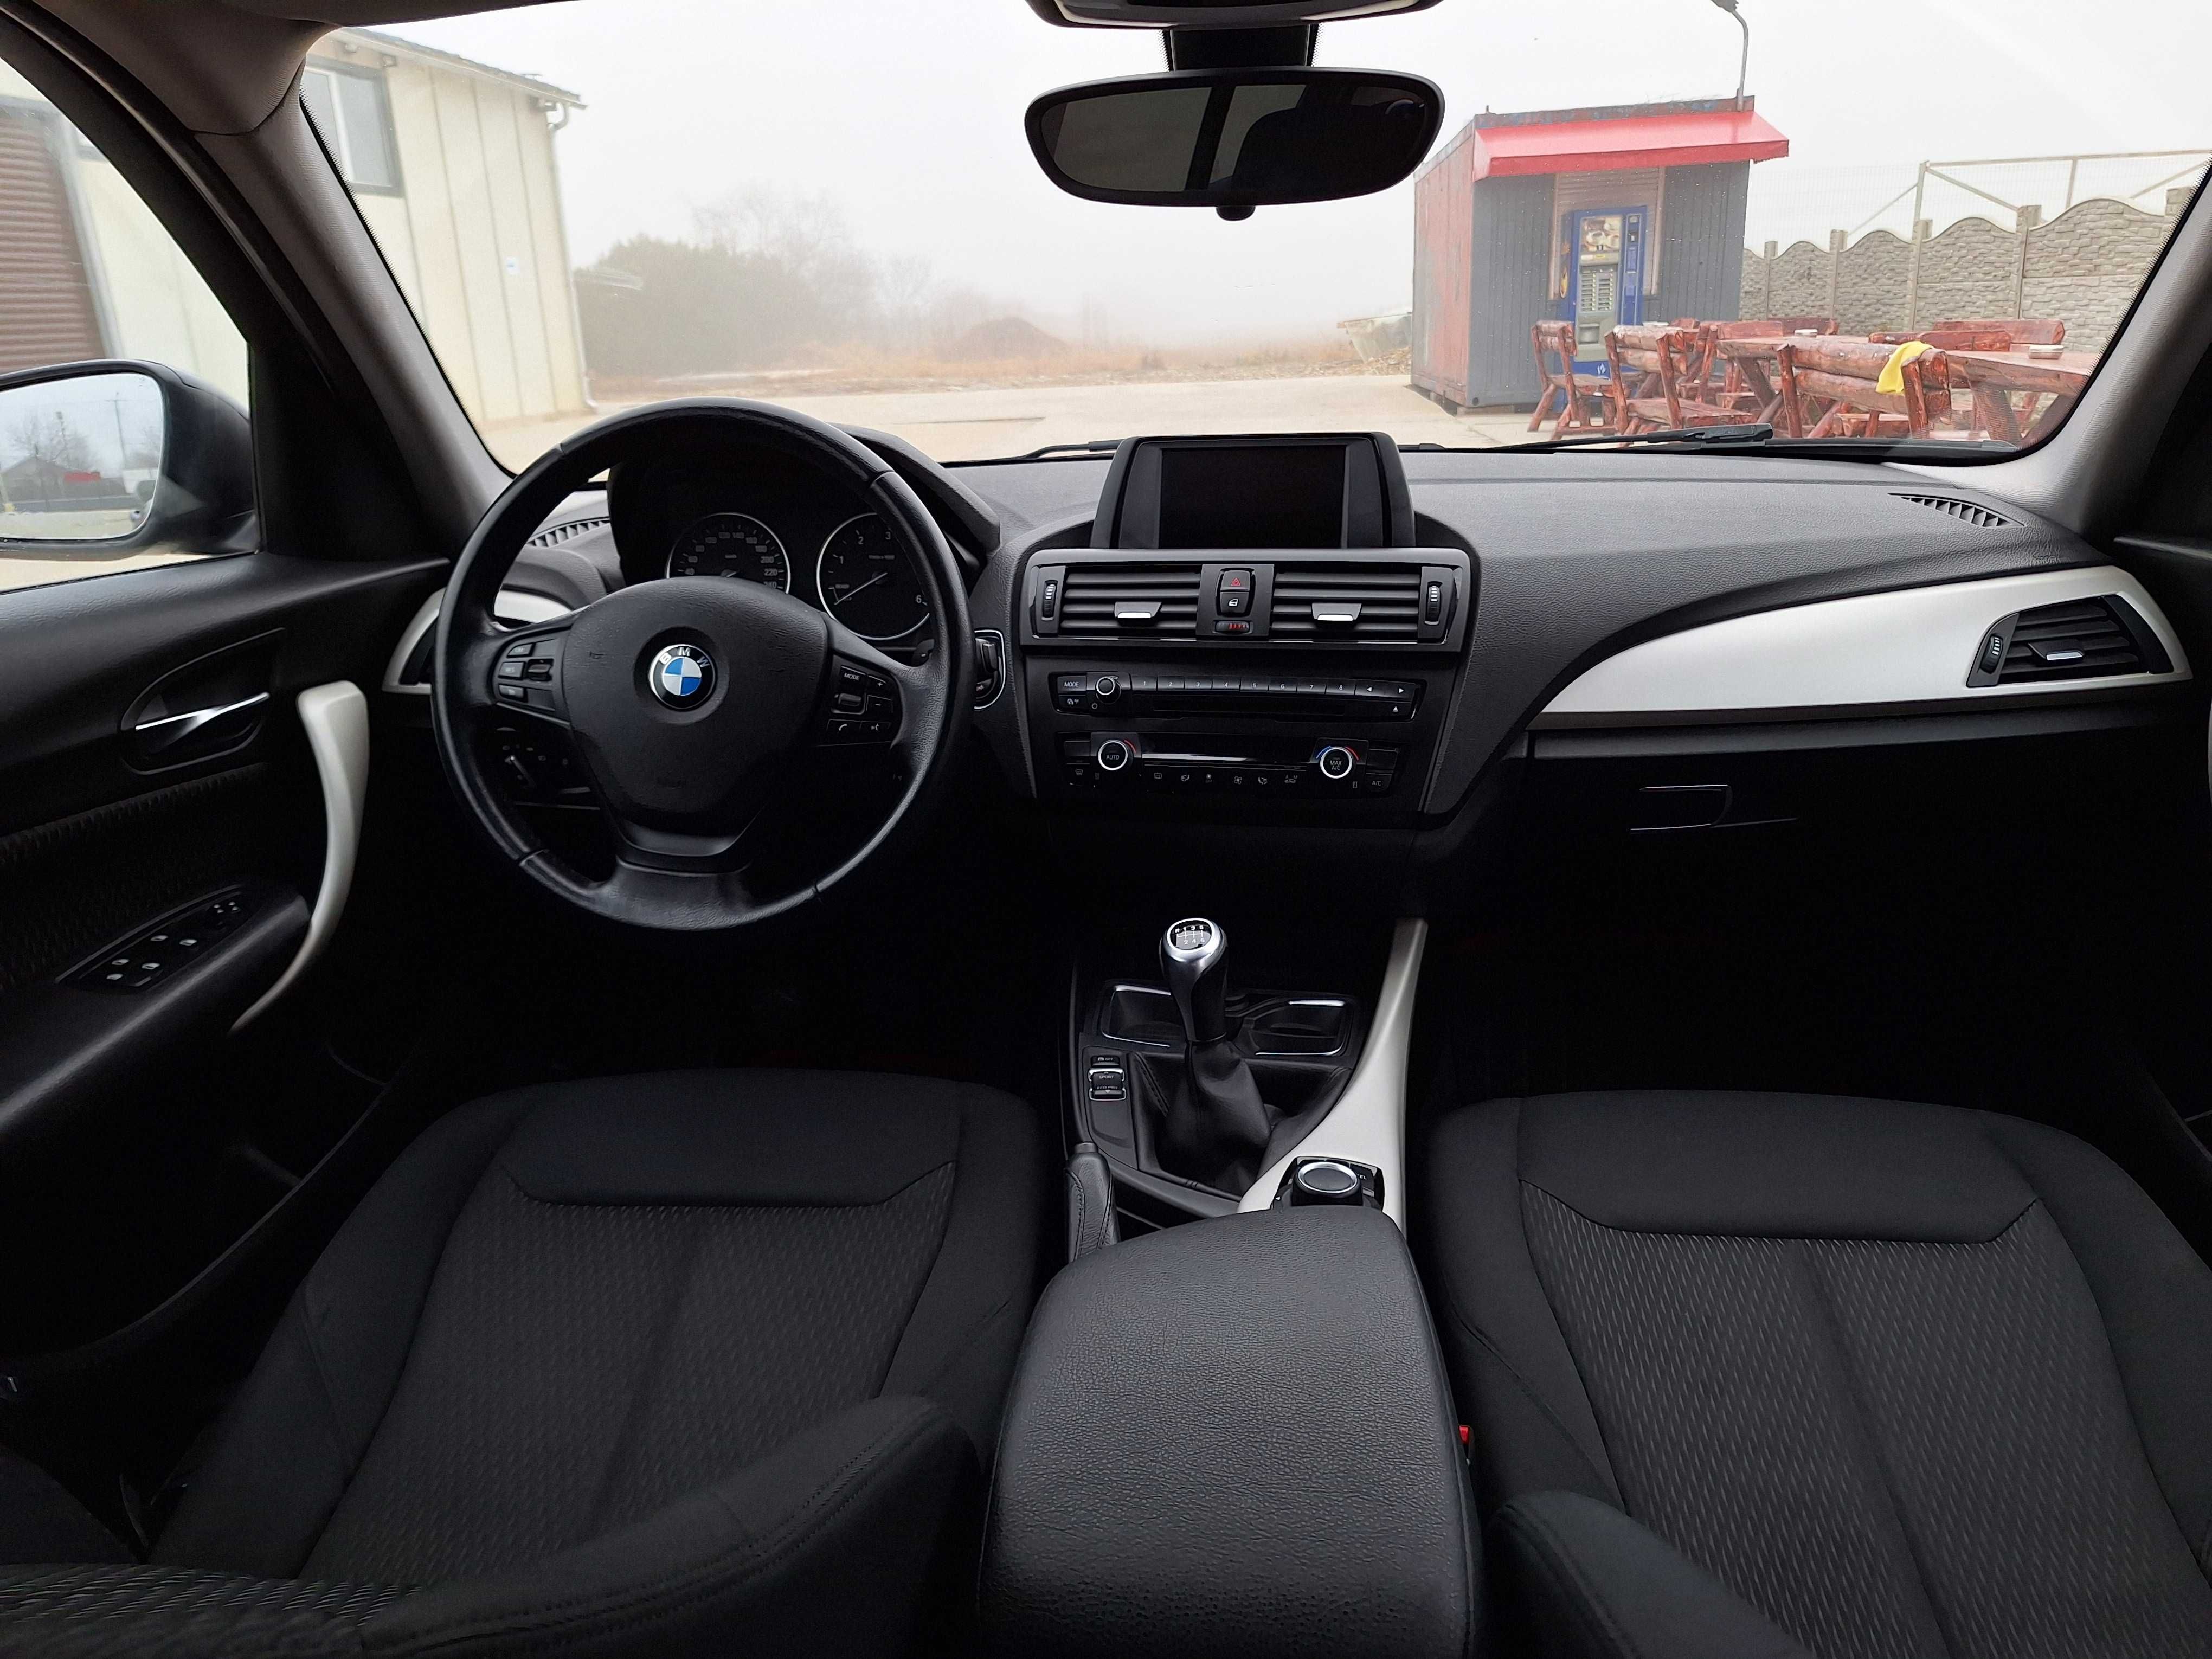 BMW Seria 1 F20 116d 2015